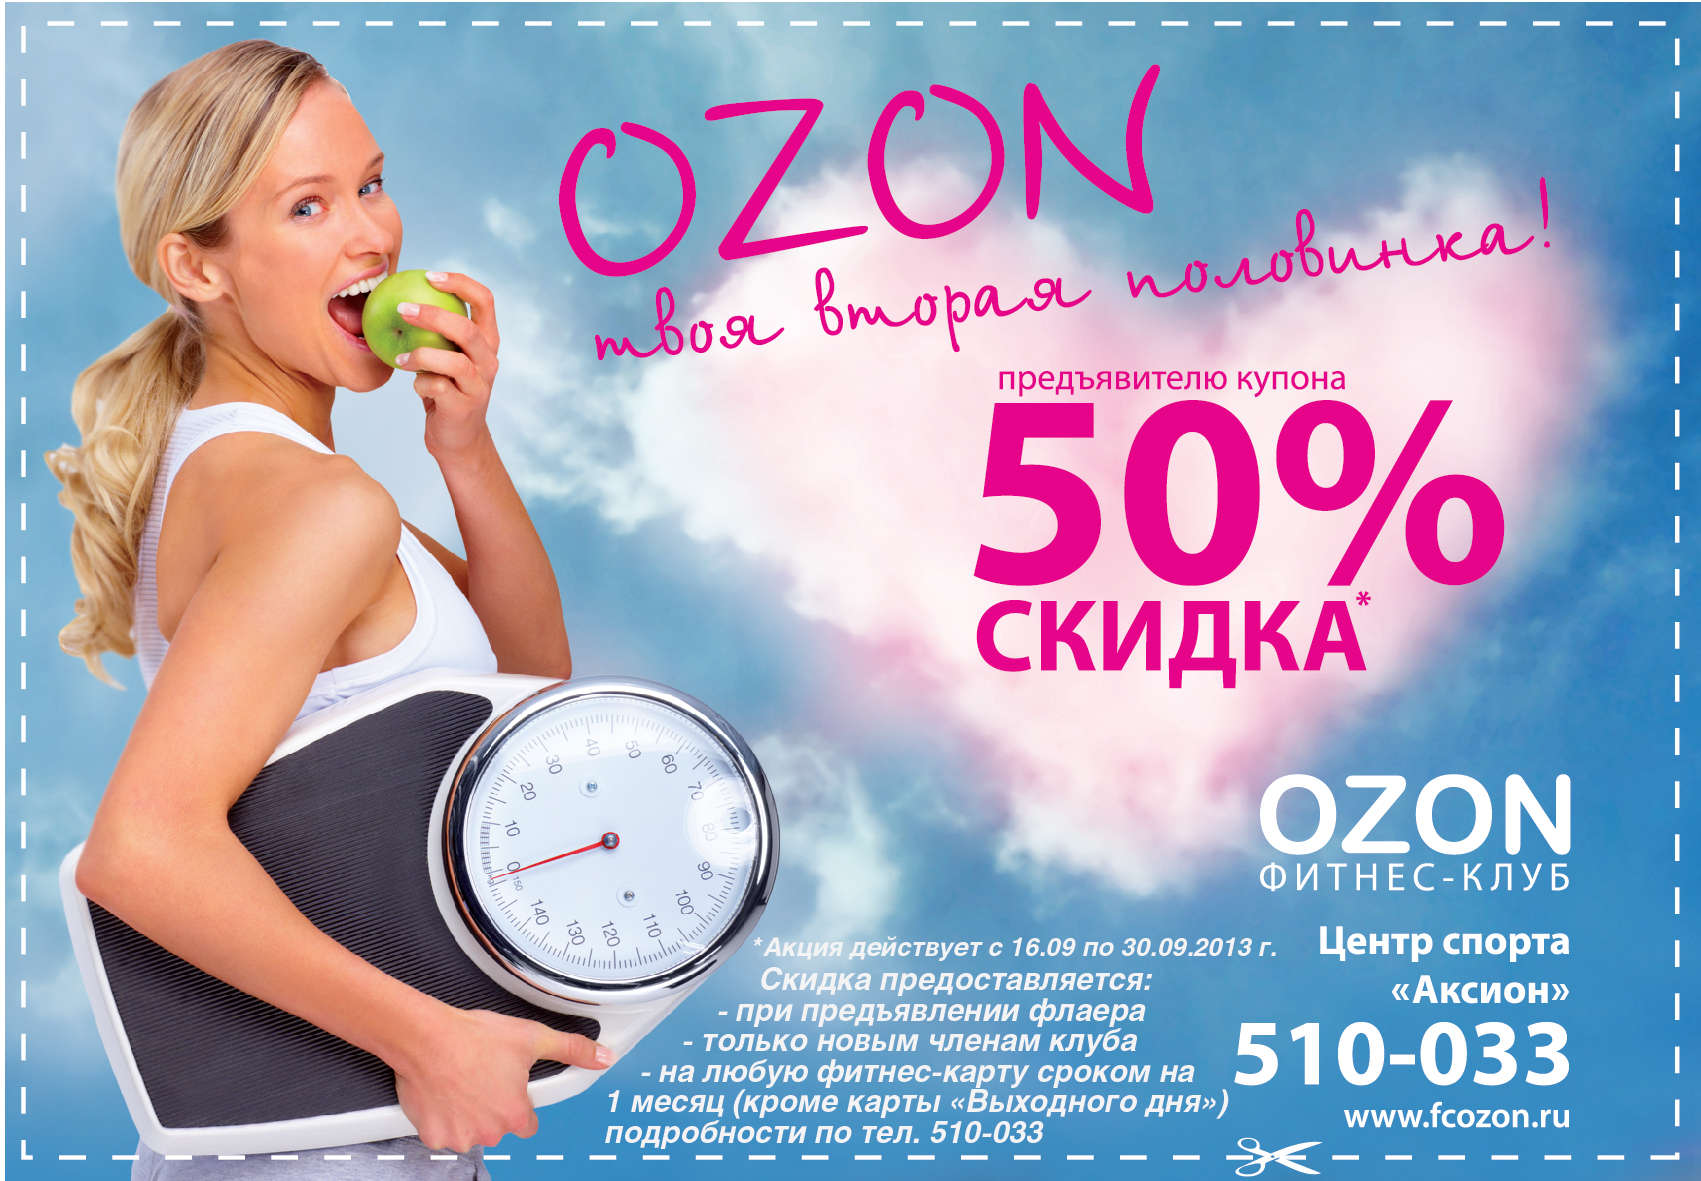 Товары со скидкой интернет магазин. OZON реклама. OZON скидки. Скидки. Баннер для акции Озон.